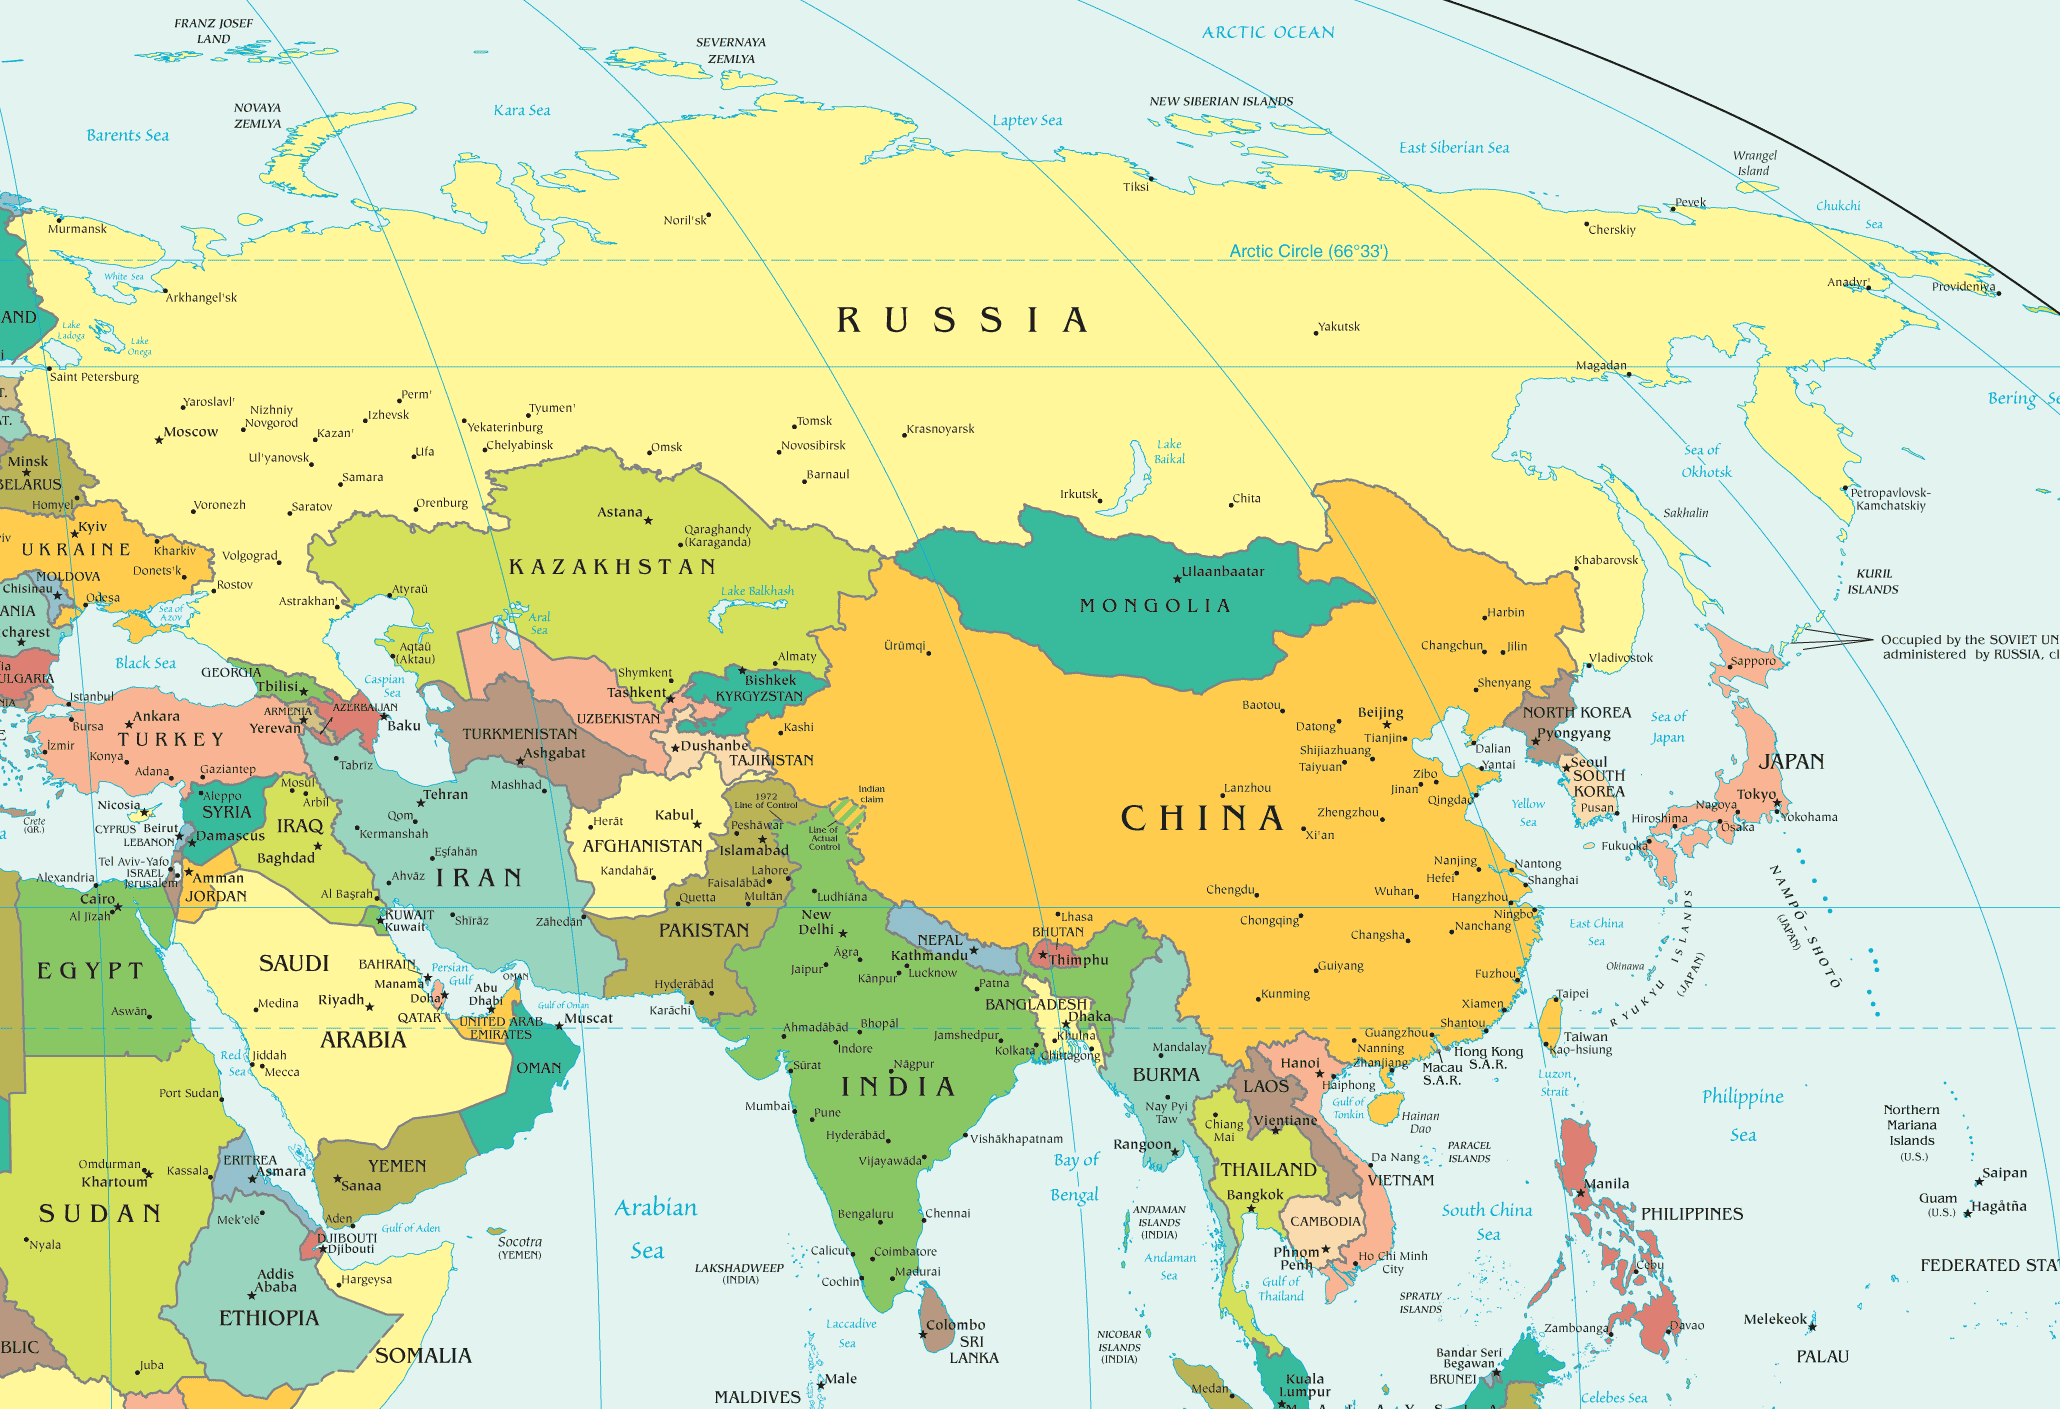 Карту евразии крупным планом